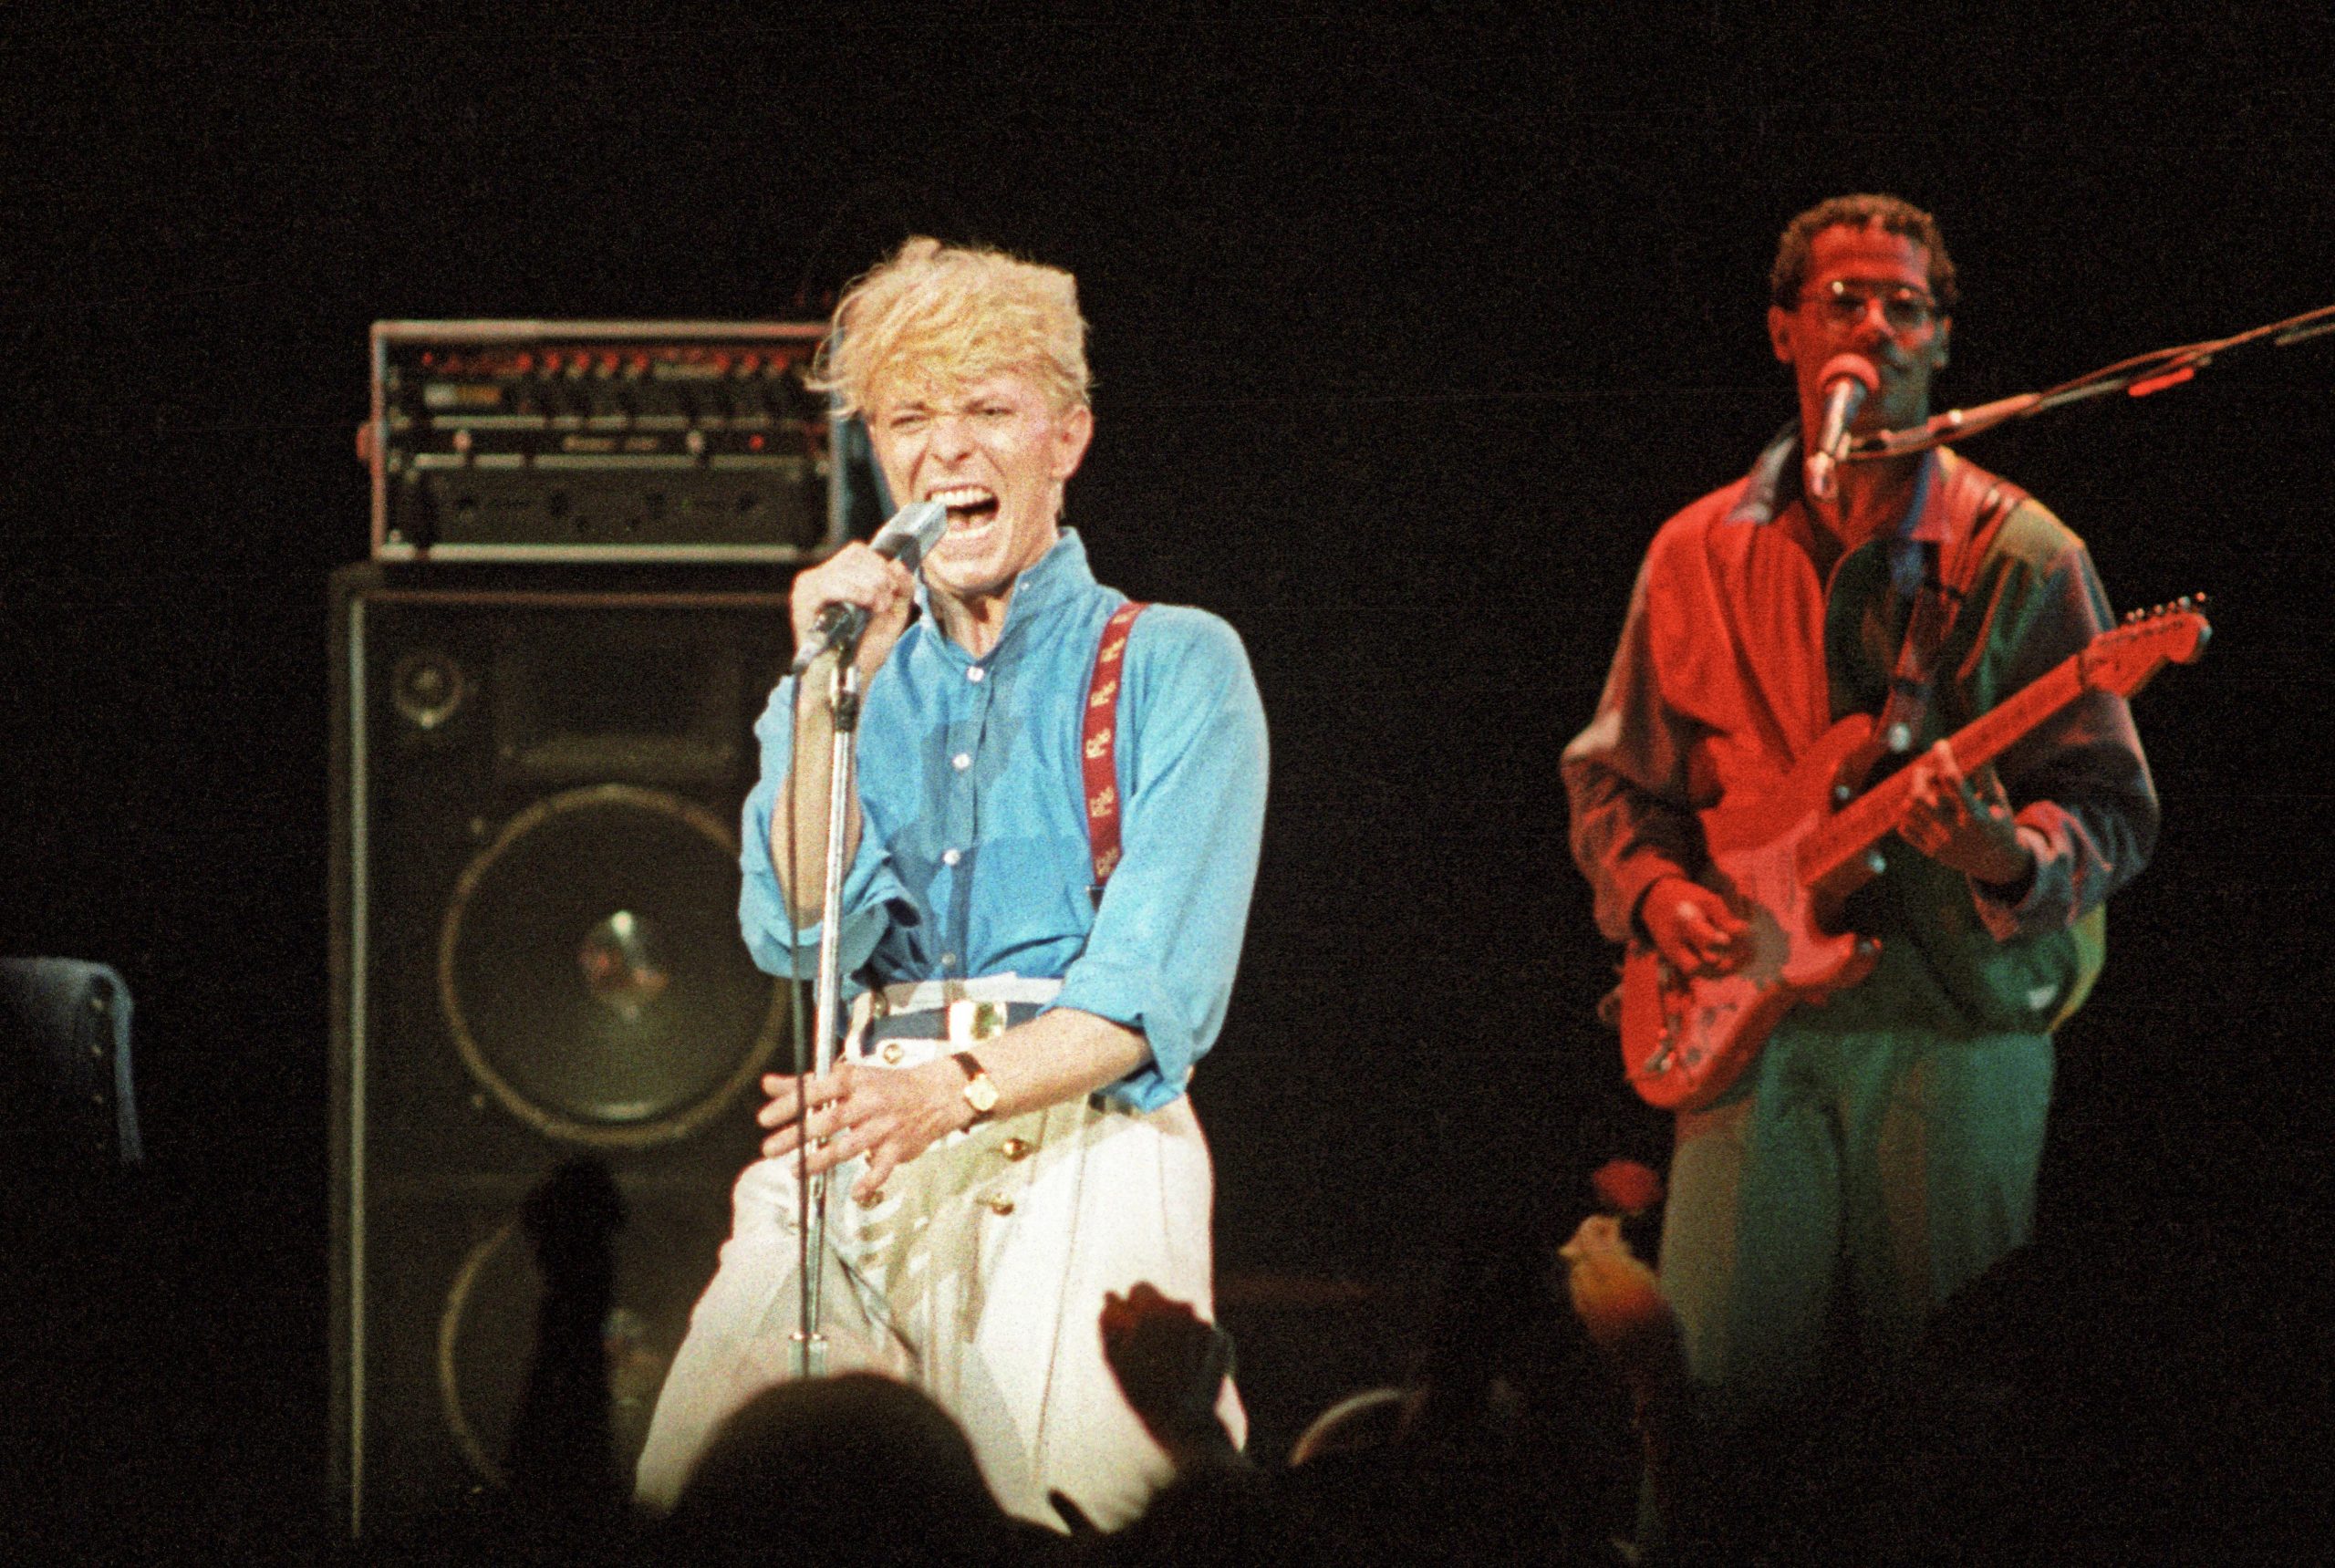 Carlos Alomar y David Bowie en 1983